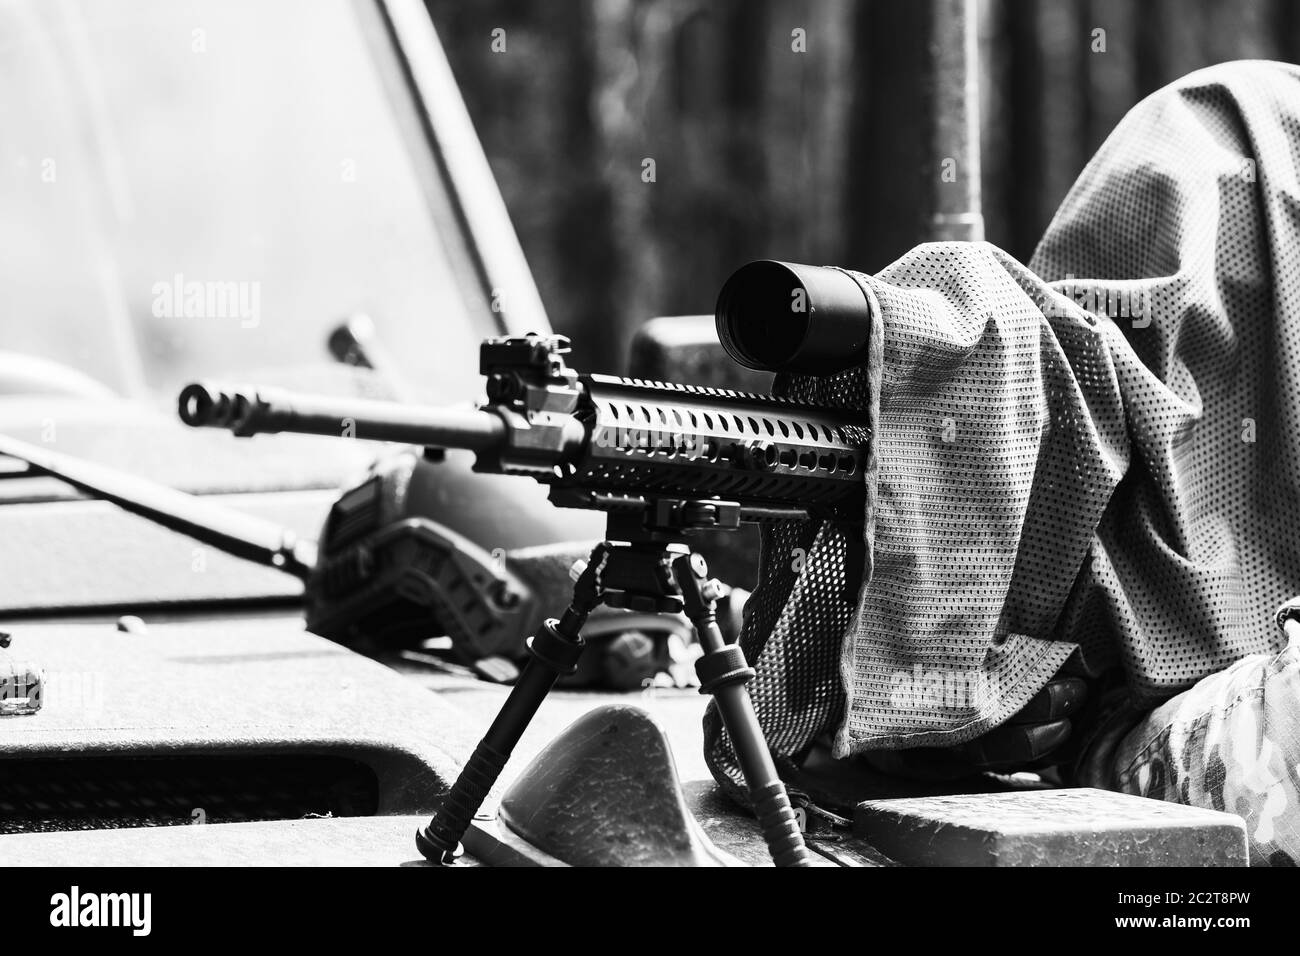 Militärmann in Tarnuniform mit Gewehr. Ausgerüstet Scharfschützenschießen mit Gewehr. Ein maskierter Scharfschütze zielt auf ein Ziel. Scharfschütze mit einem Gewehr. Stockfoto